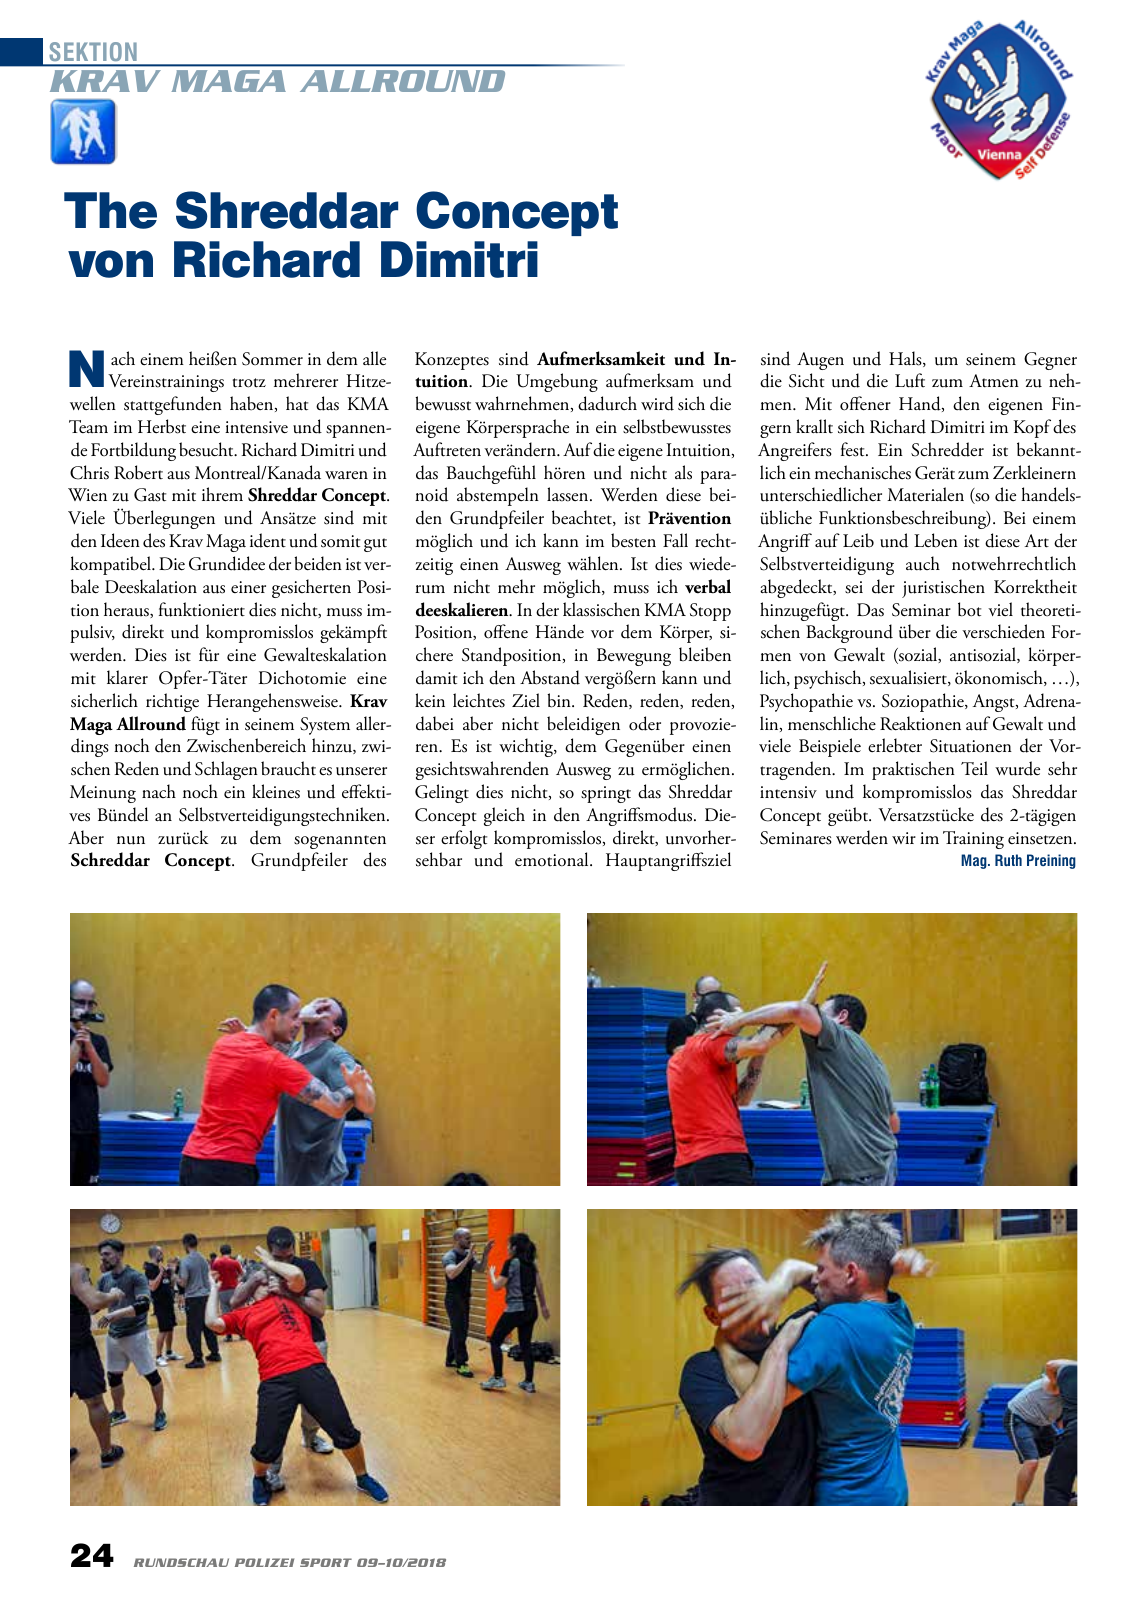 Vorschau Rundschau Polizei Sport 09-10/2018 Seite 24